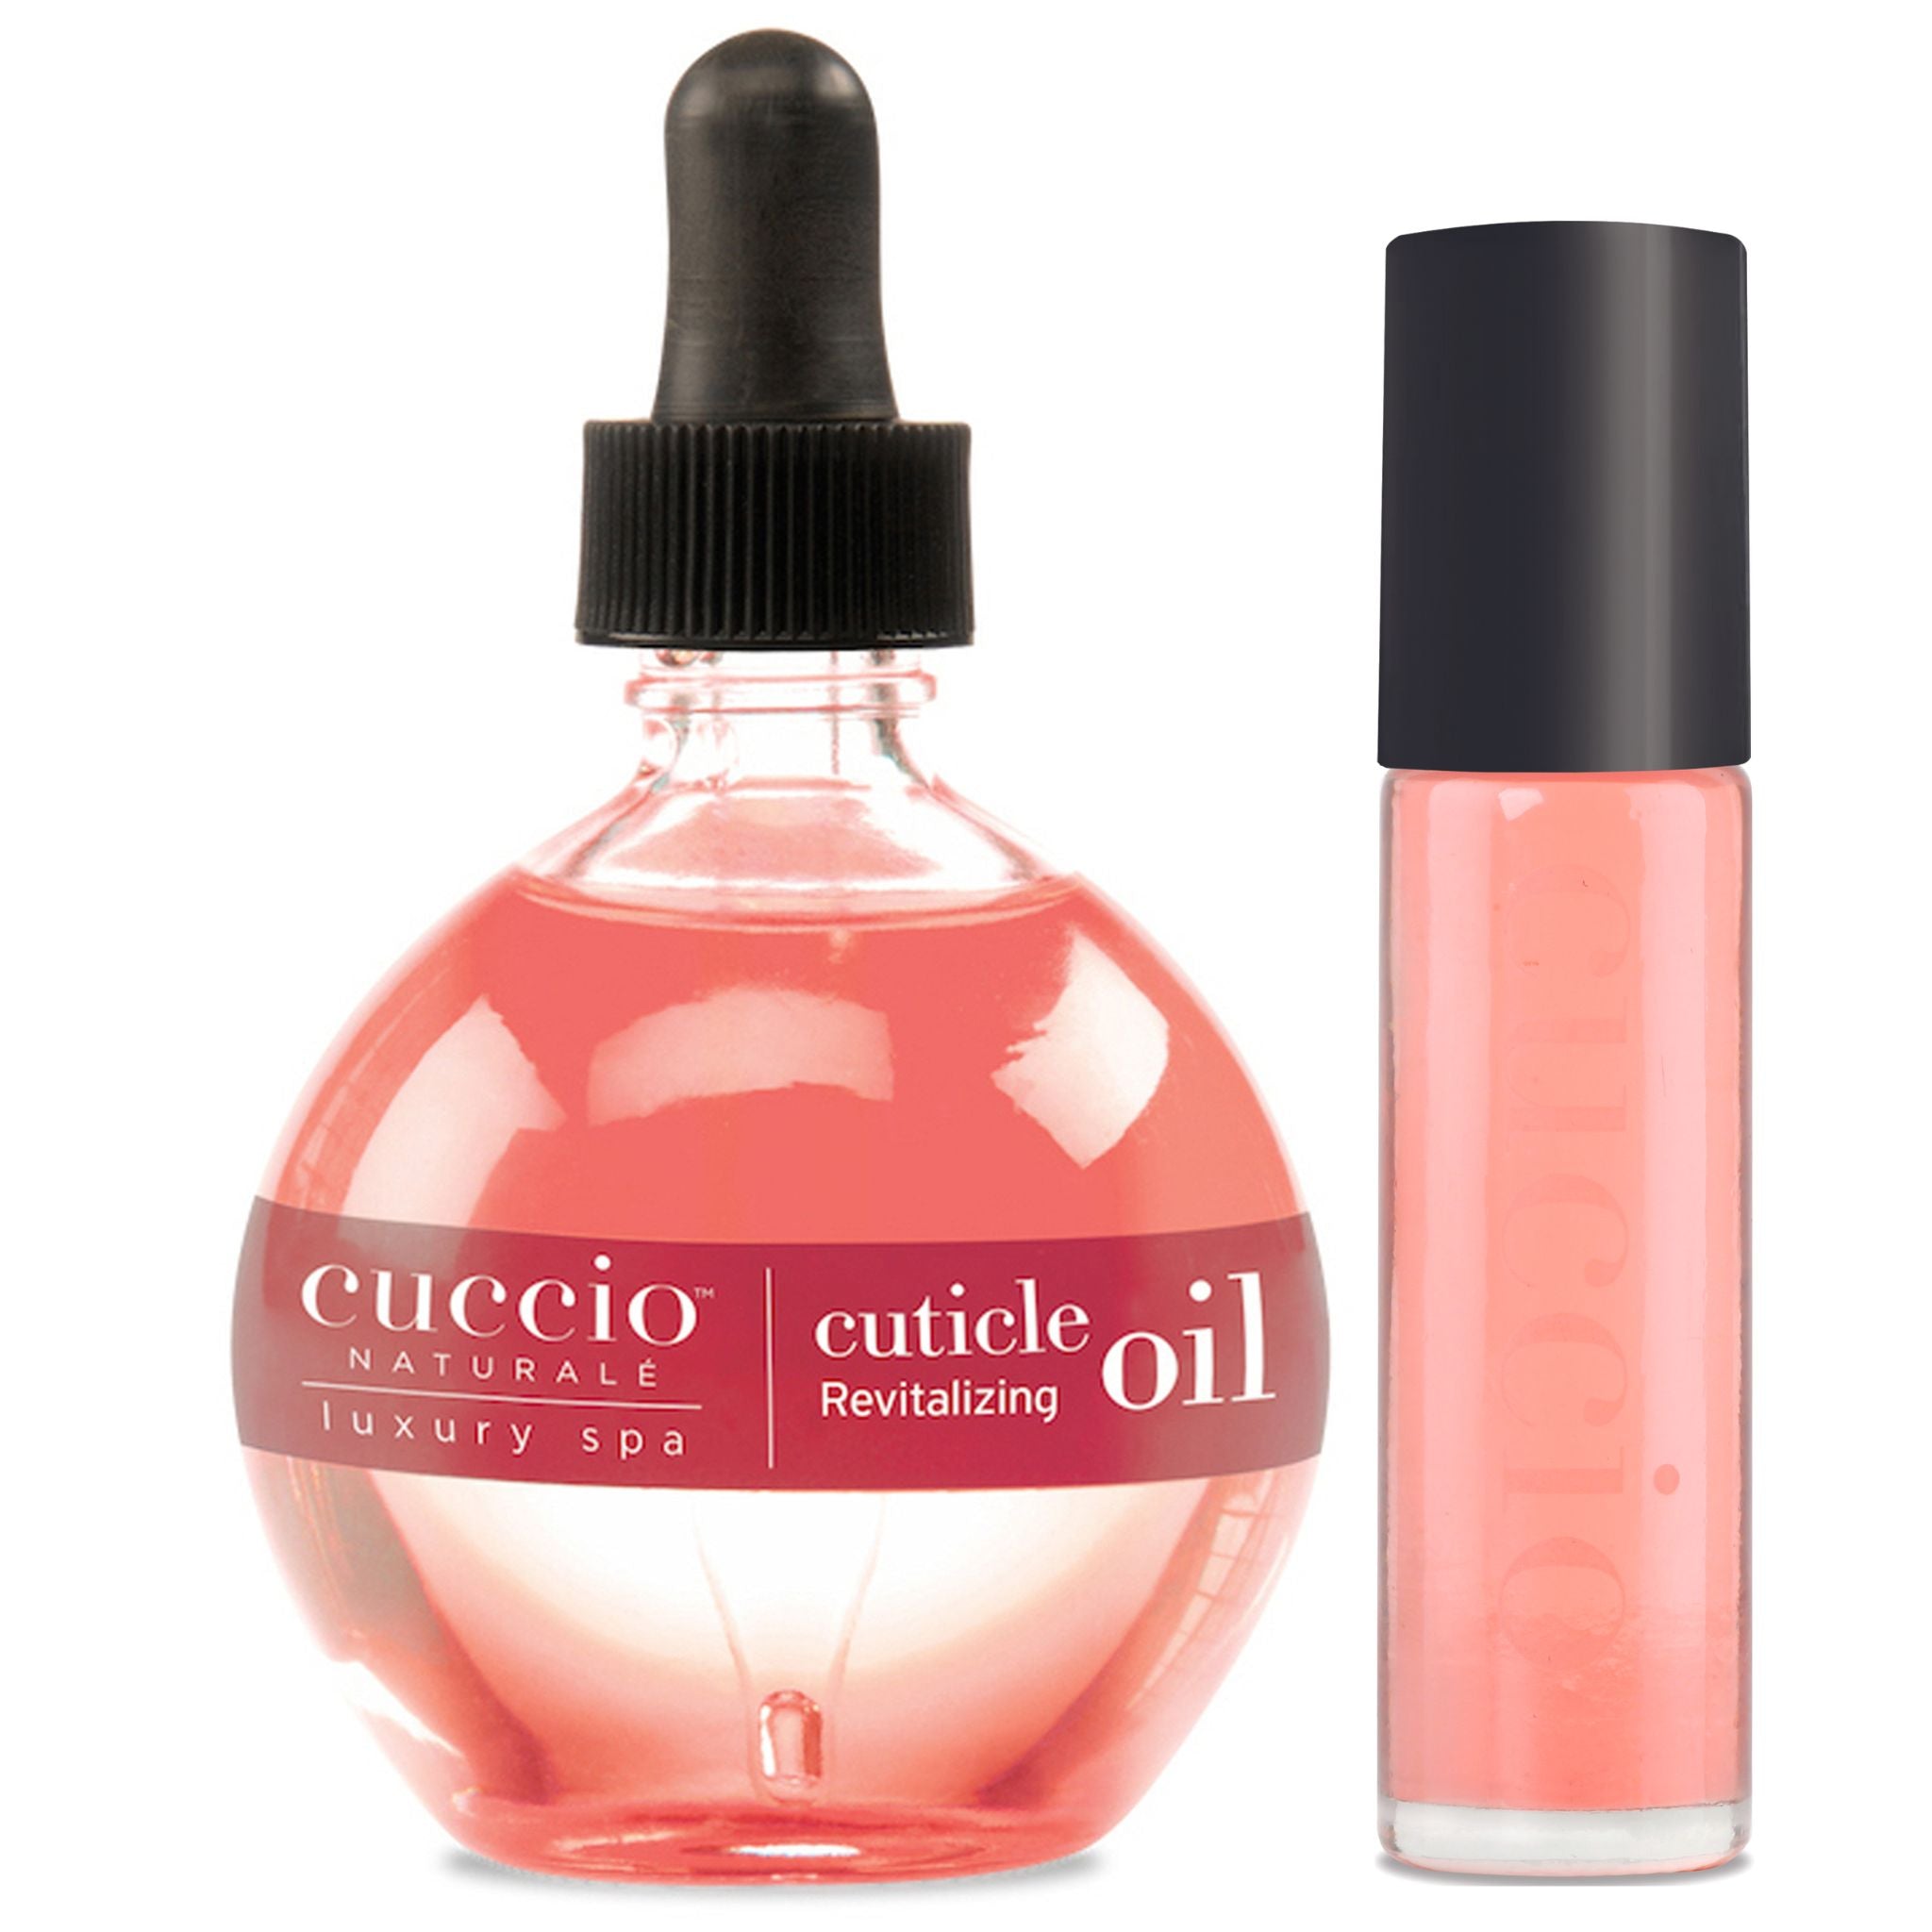 Pomegranate & Fig Cuticle -Duo Cuccio Pack – Oil Kit